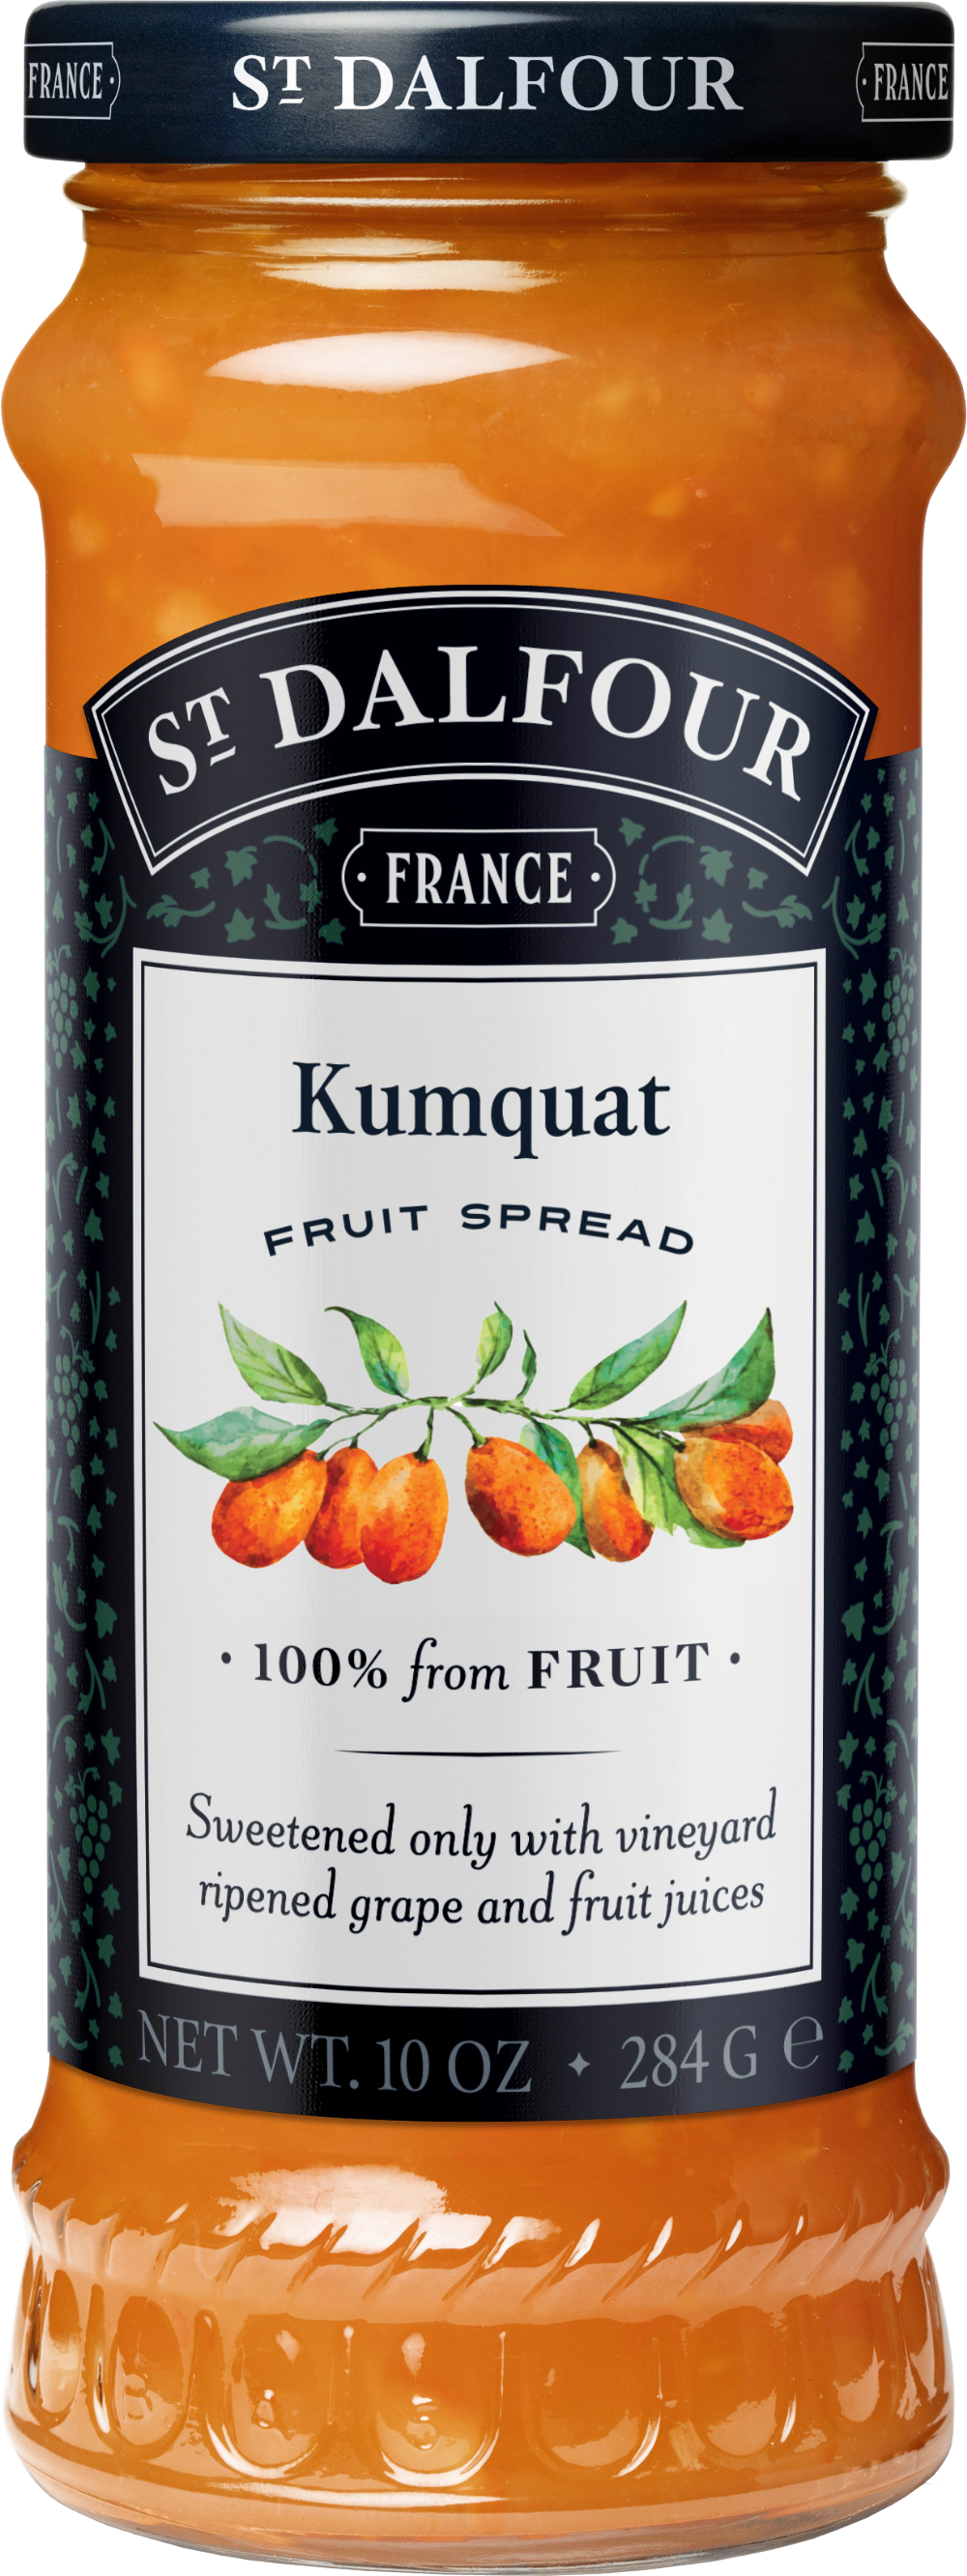 ST DALFOUR Kumquat Fruit Spread 284g